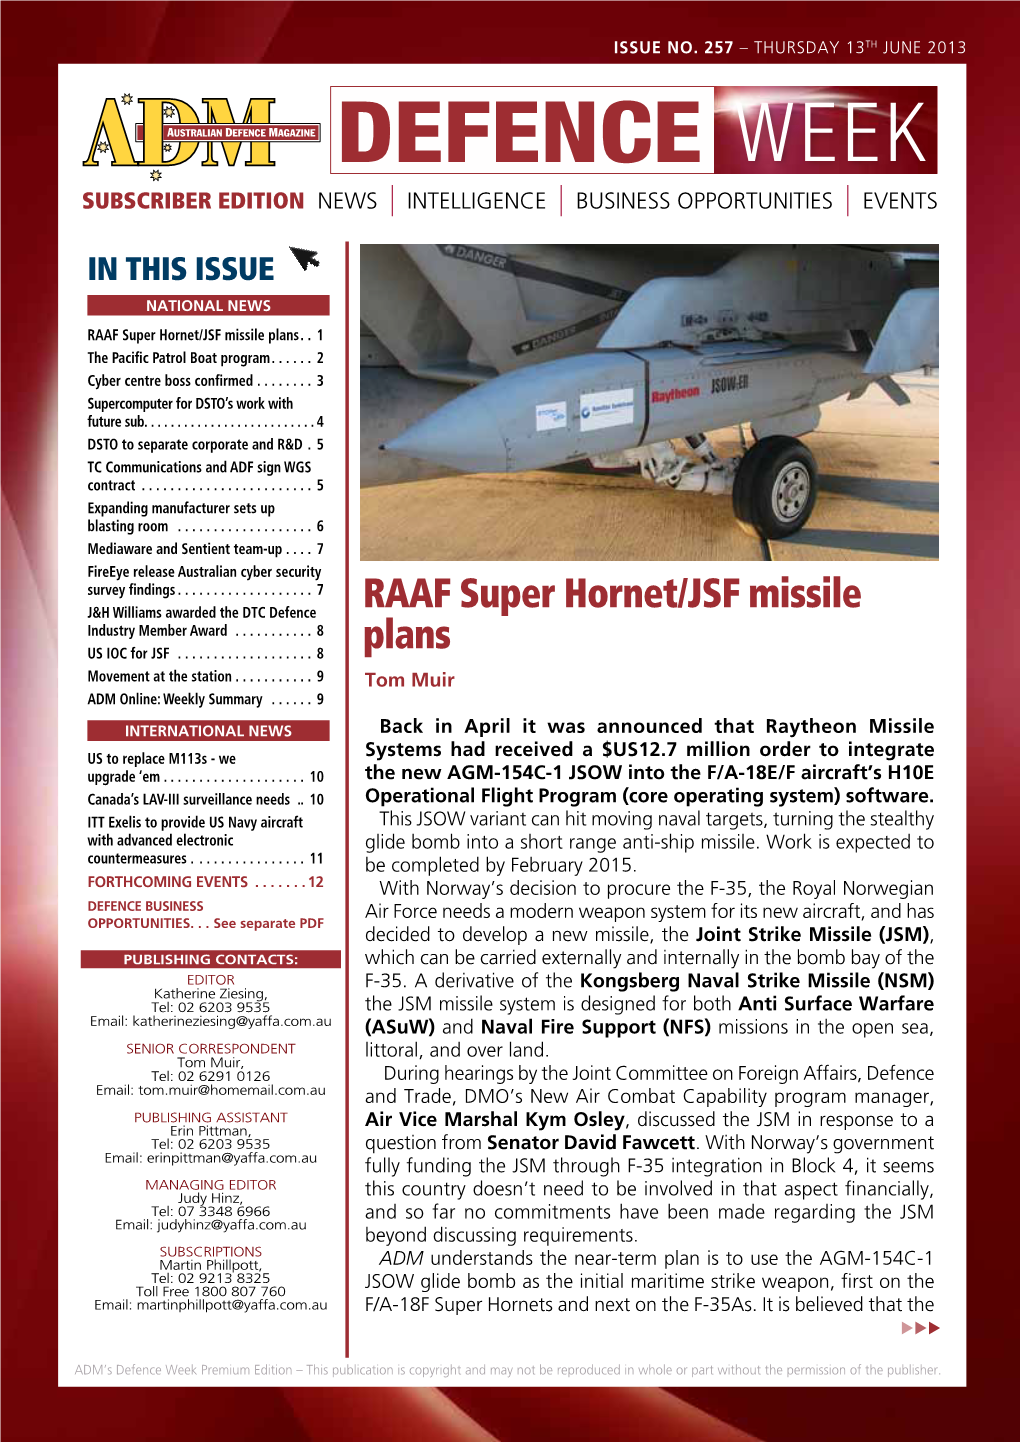 RAAF Super Hornet/JSF Missile Plans